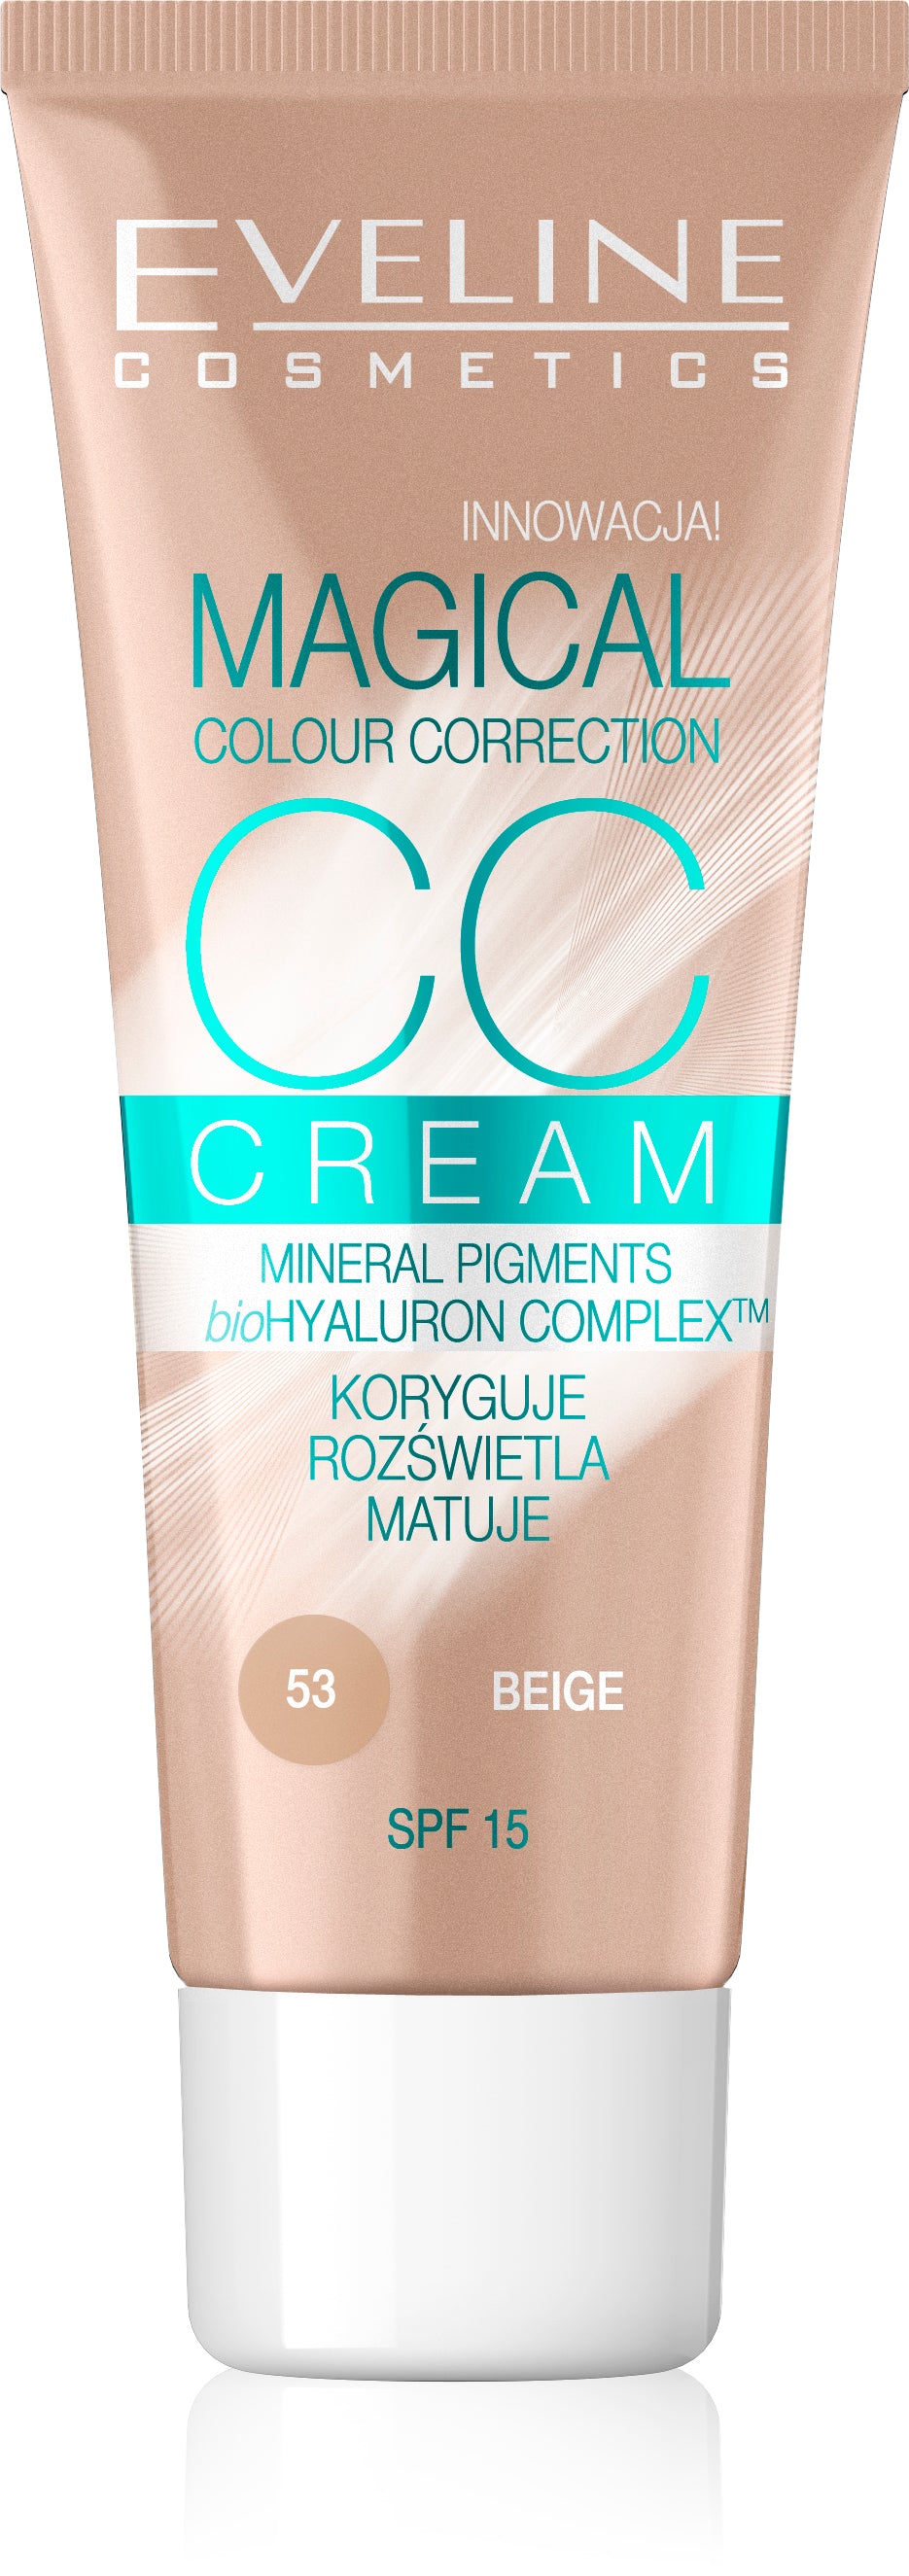 CC Cream Magical Colour Correction  Medium Beige 30ML